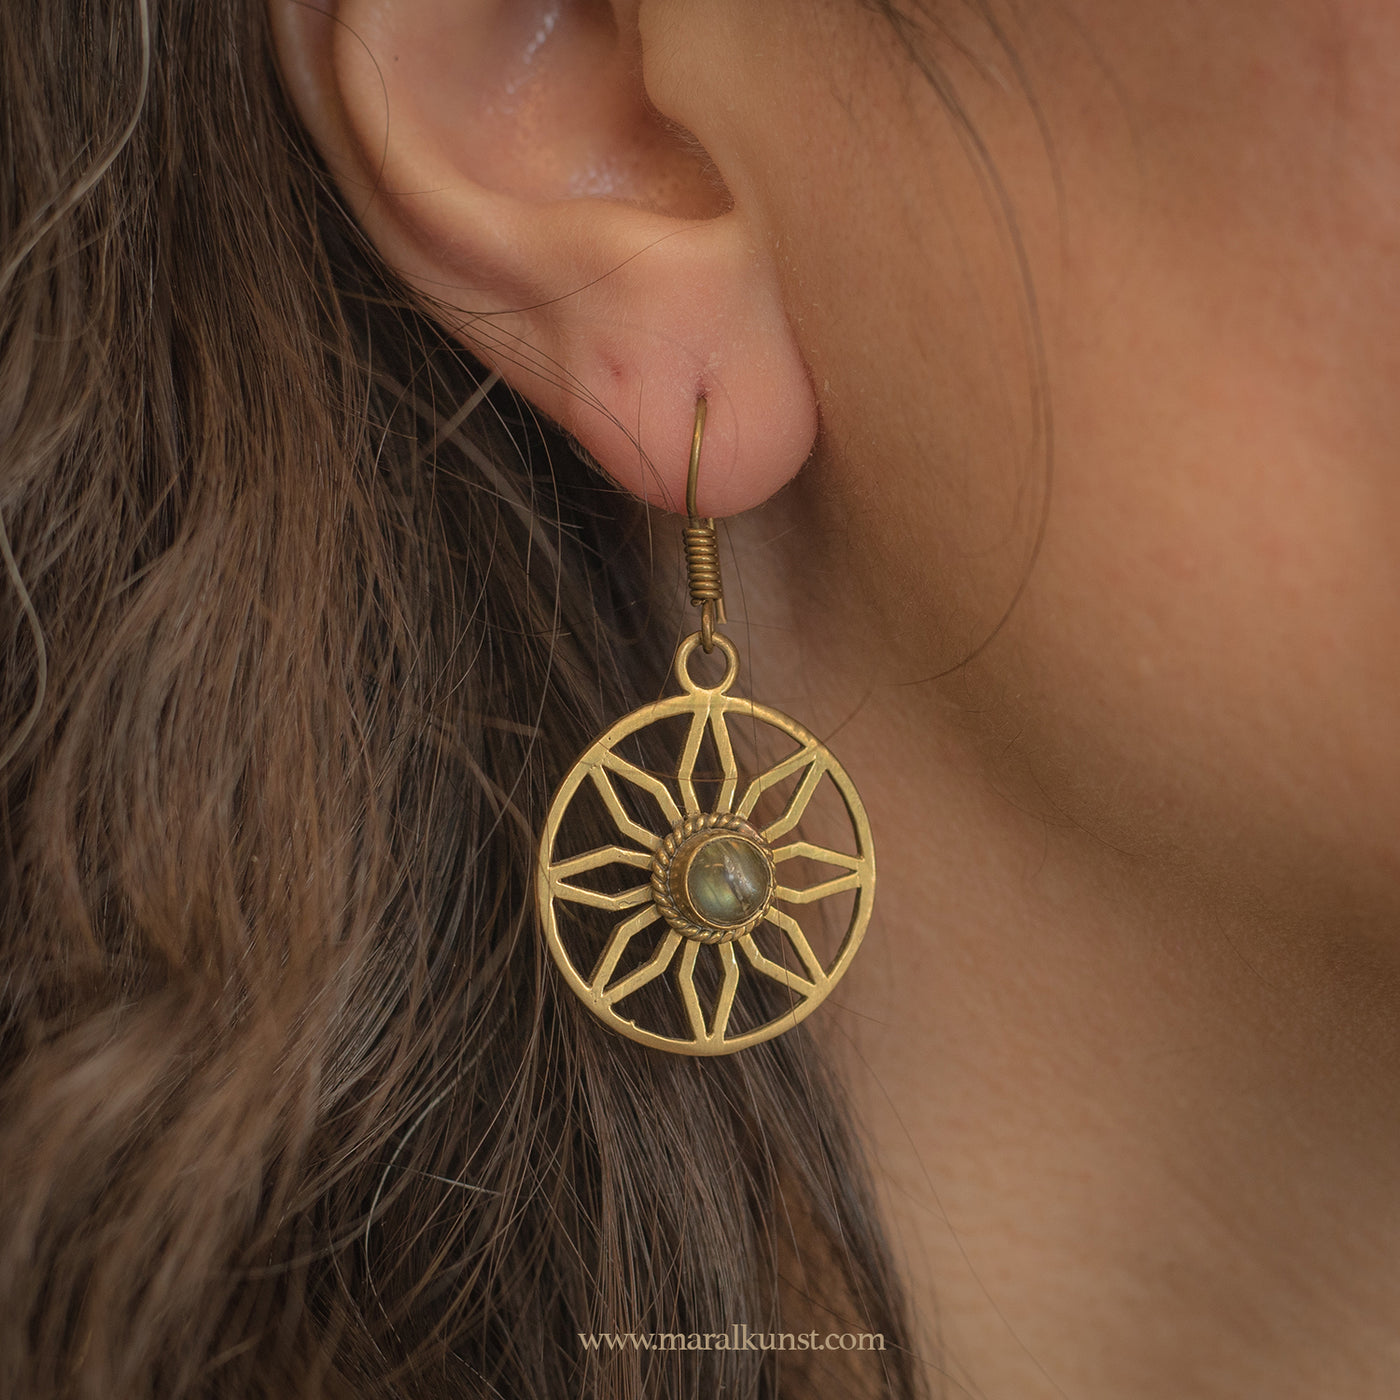 Brass sun earrings